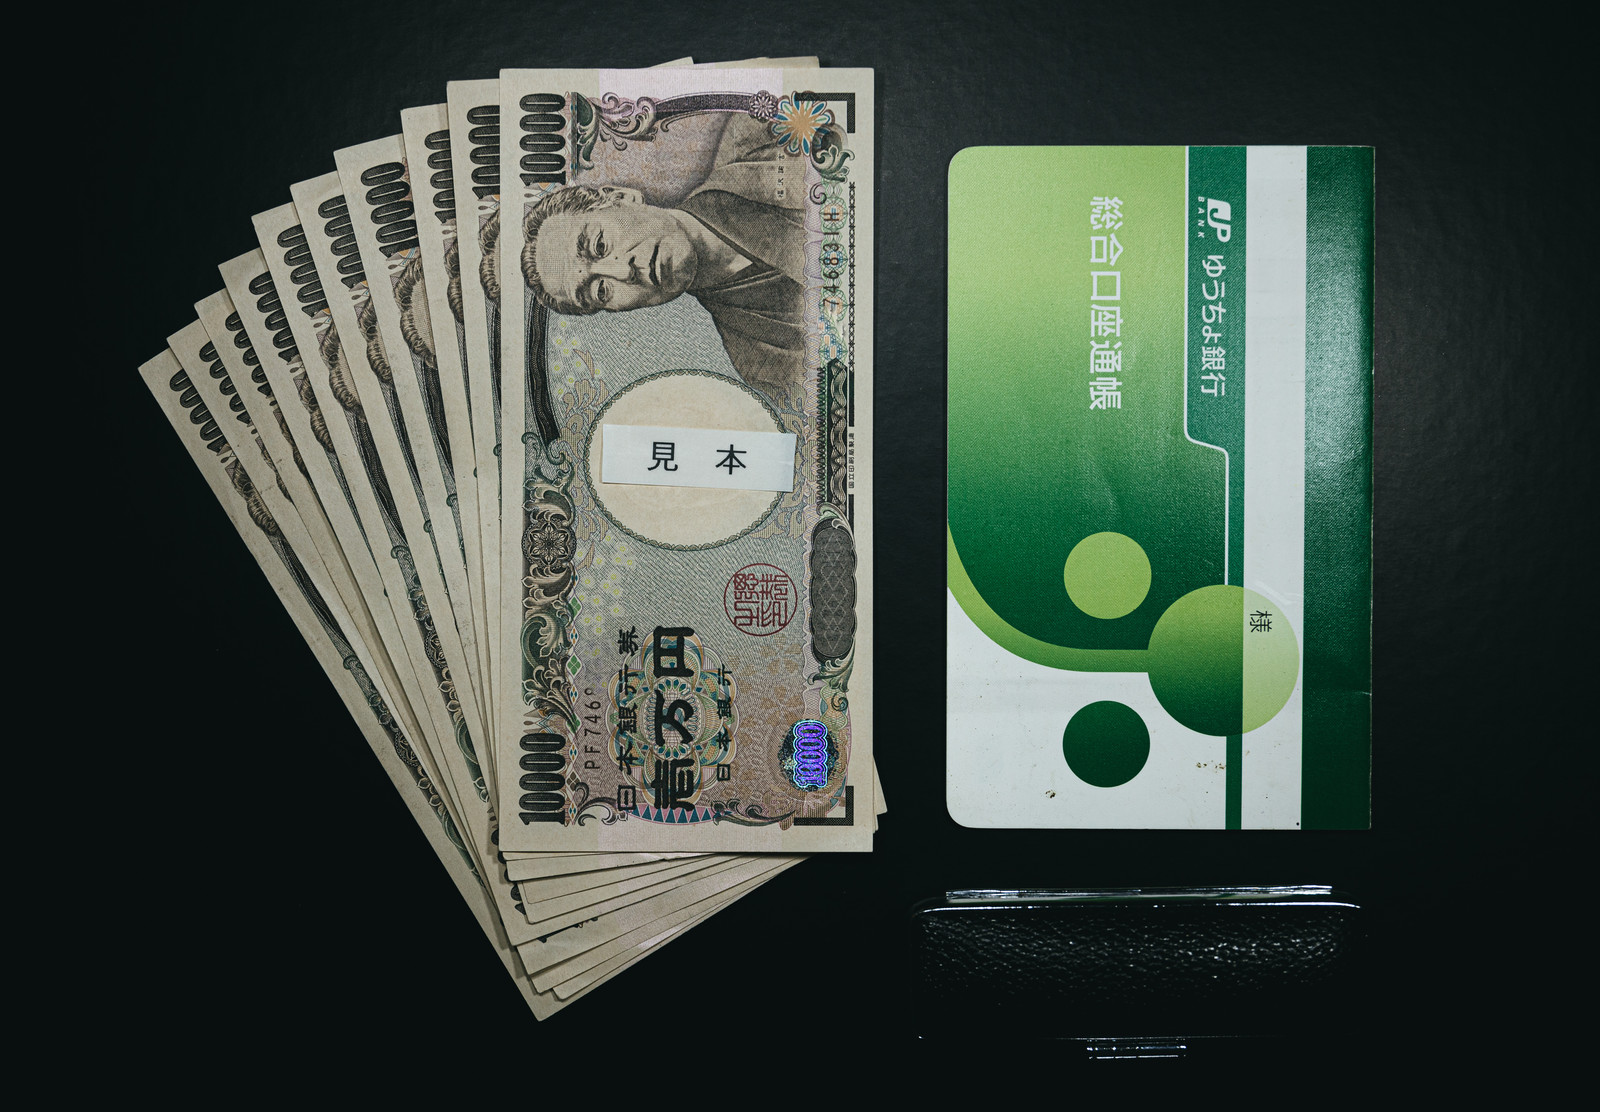 【必見】LINEMO(ラインモ)をデビットカードで契約申し込みする方法 linemo-kouzafuriokae